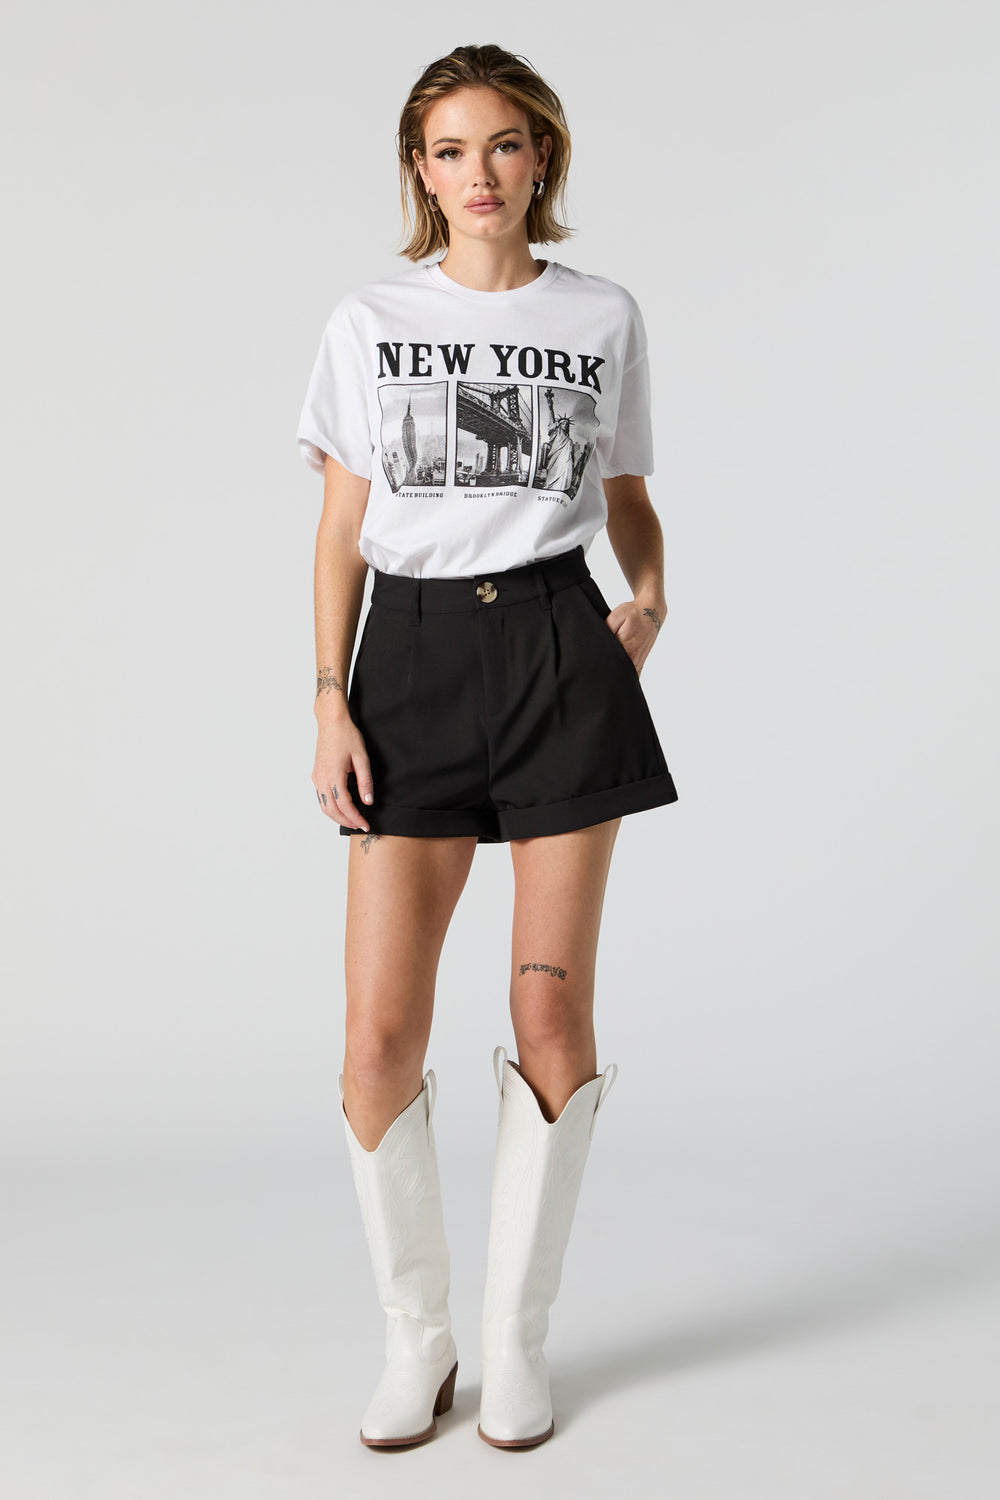 New York Tourist Spots Graphic Boyfriend T-Shirt New York Tourist Spots Graphic Boyfriend T-Shirt 3